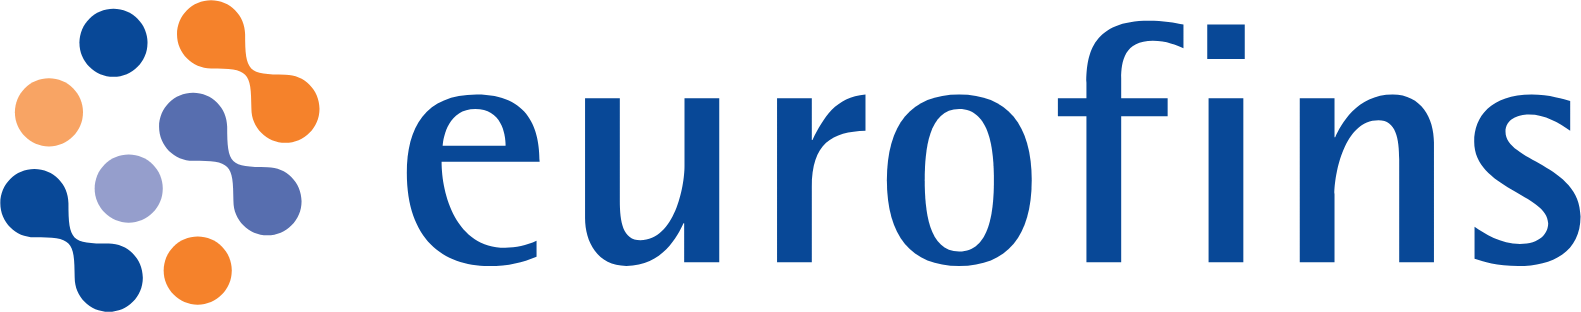 Eurofins Scientific logo large (transparent PNG)